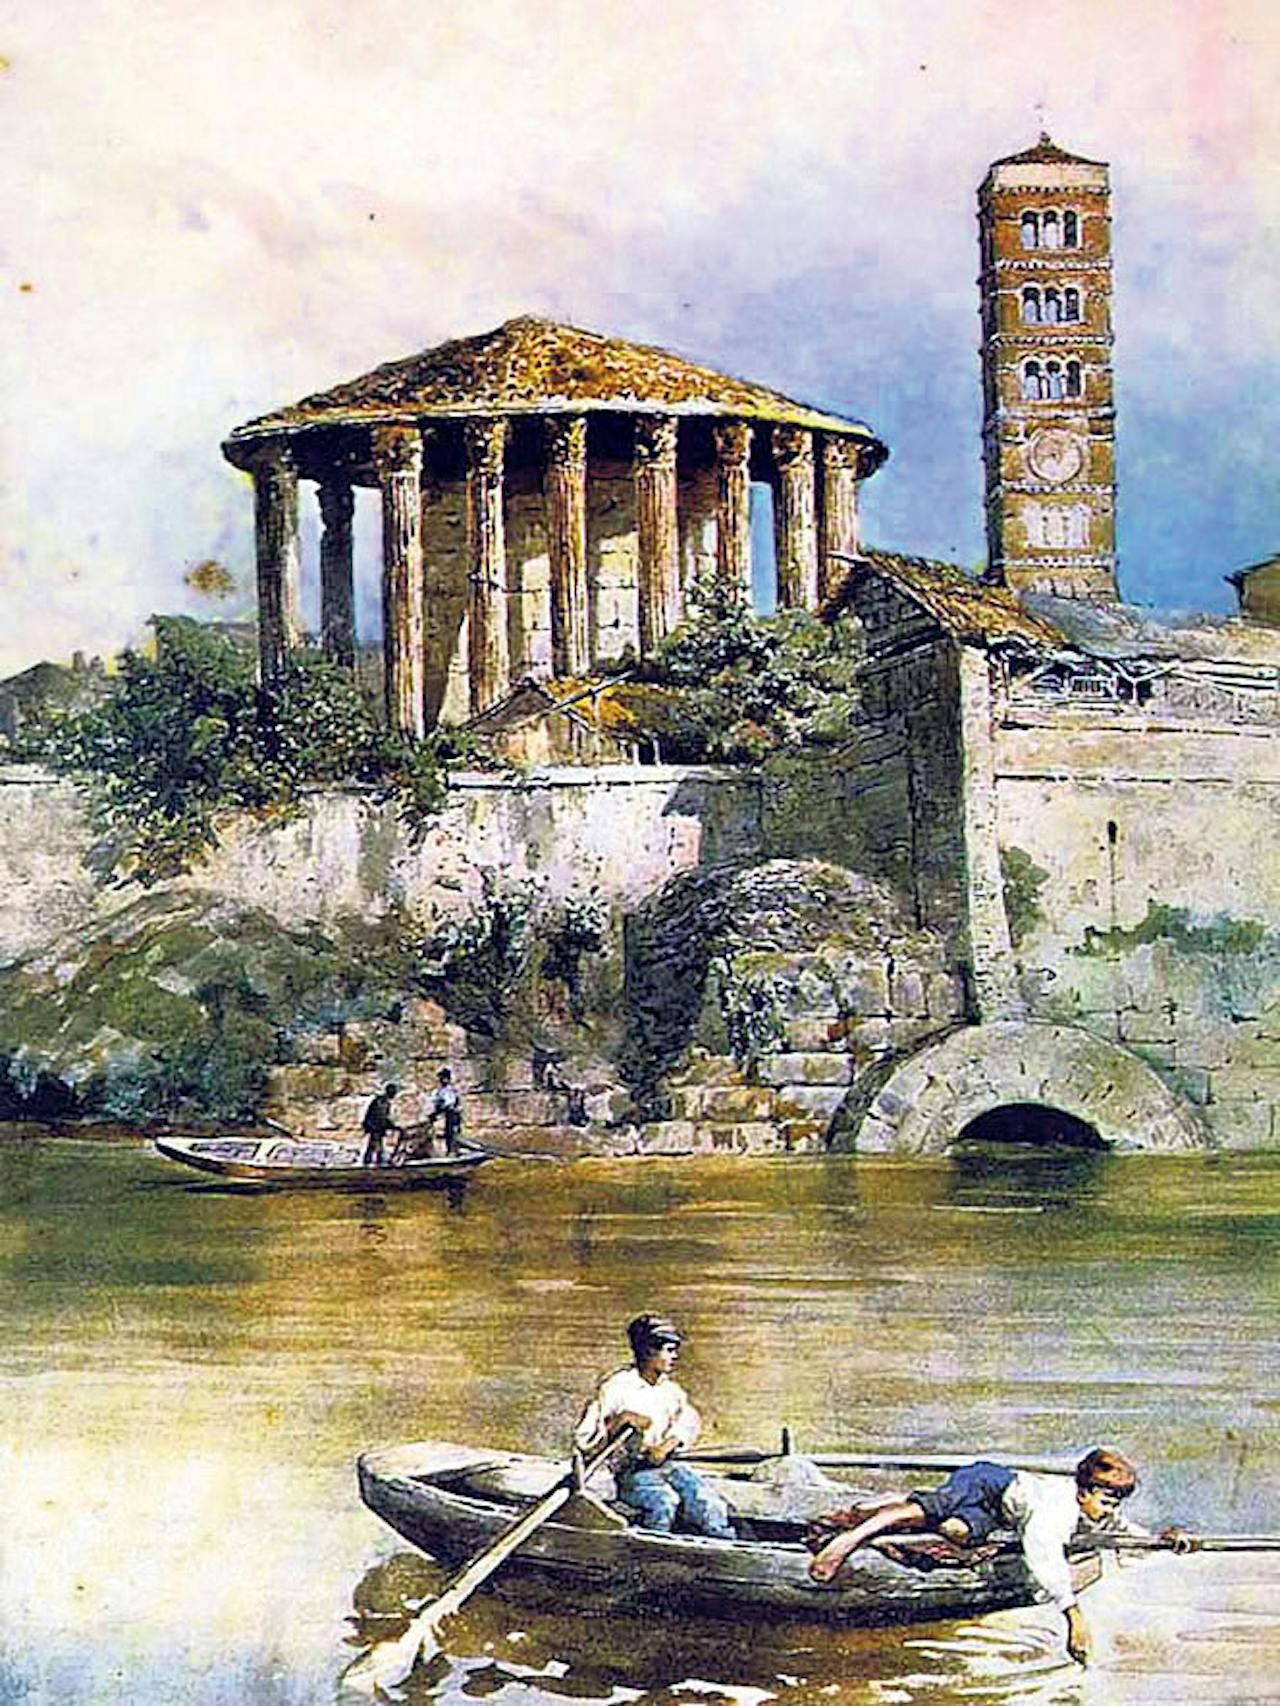 De Tempel van Hercules Olivarius: aquarel van Ettore Roesler Franz uit de negentiende eeuw.